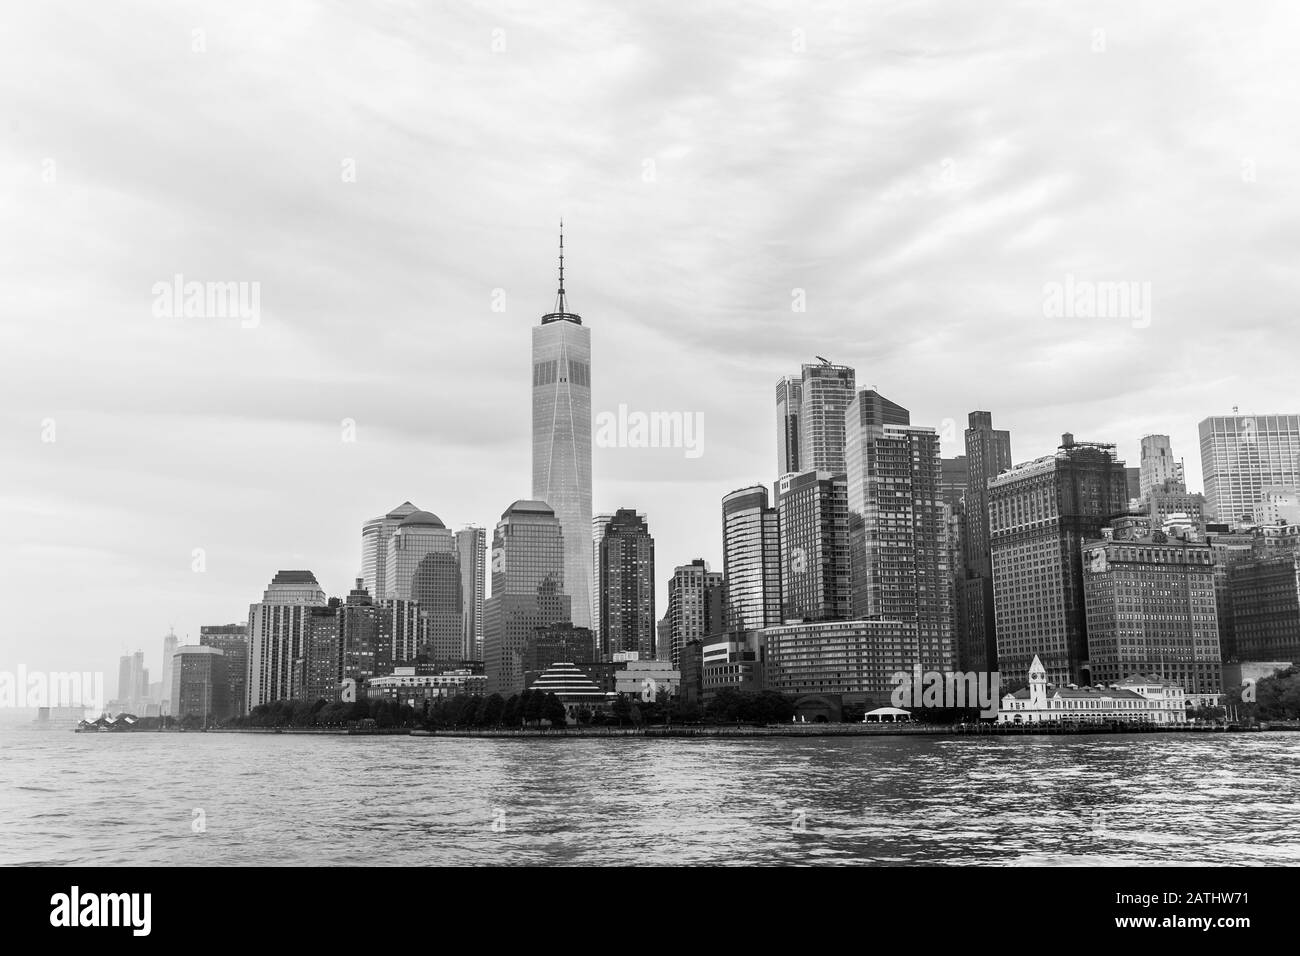 Vue panoramique de la partie basse de Manhattan, New York City, USA Banque D'Images